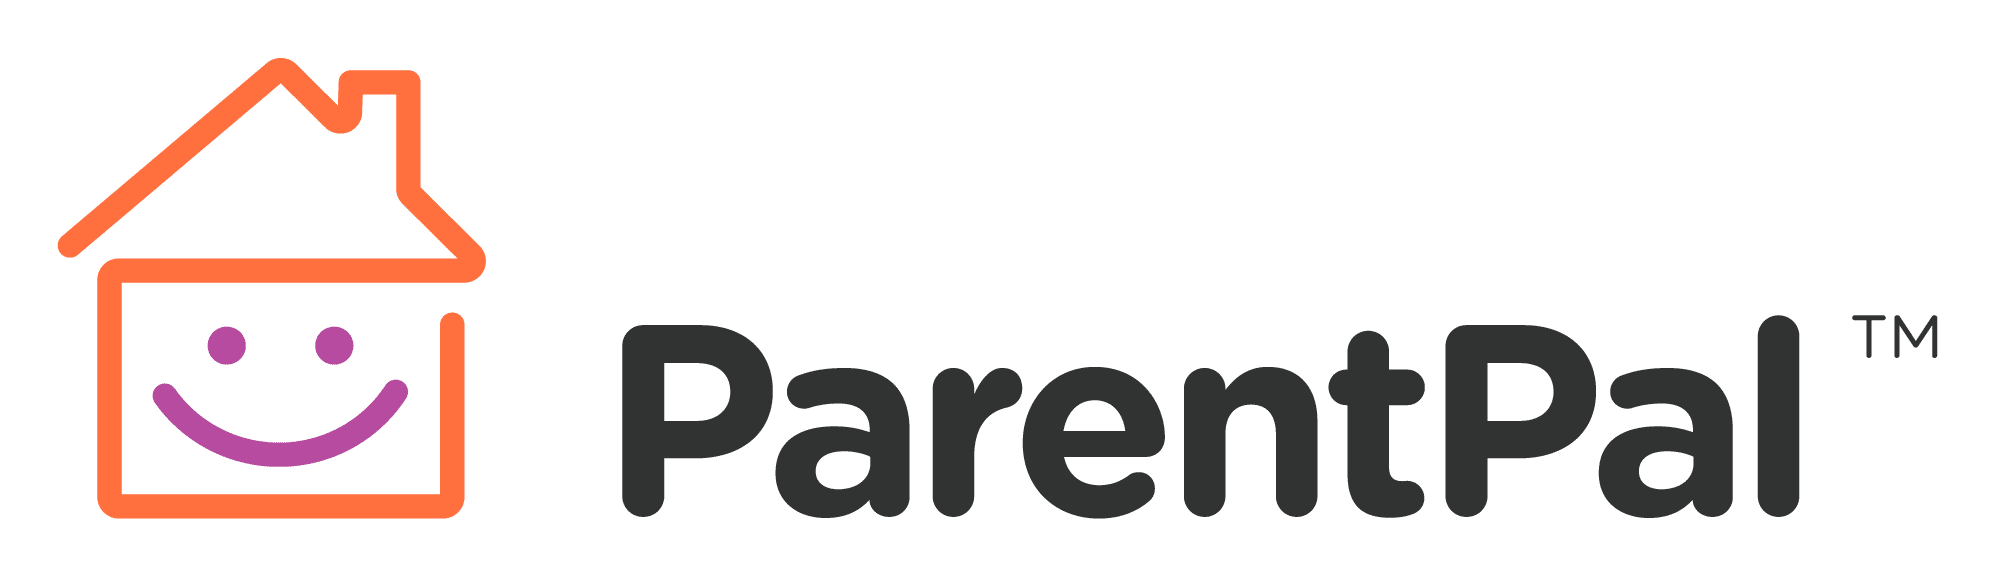 ParentPal logo